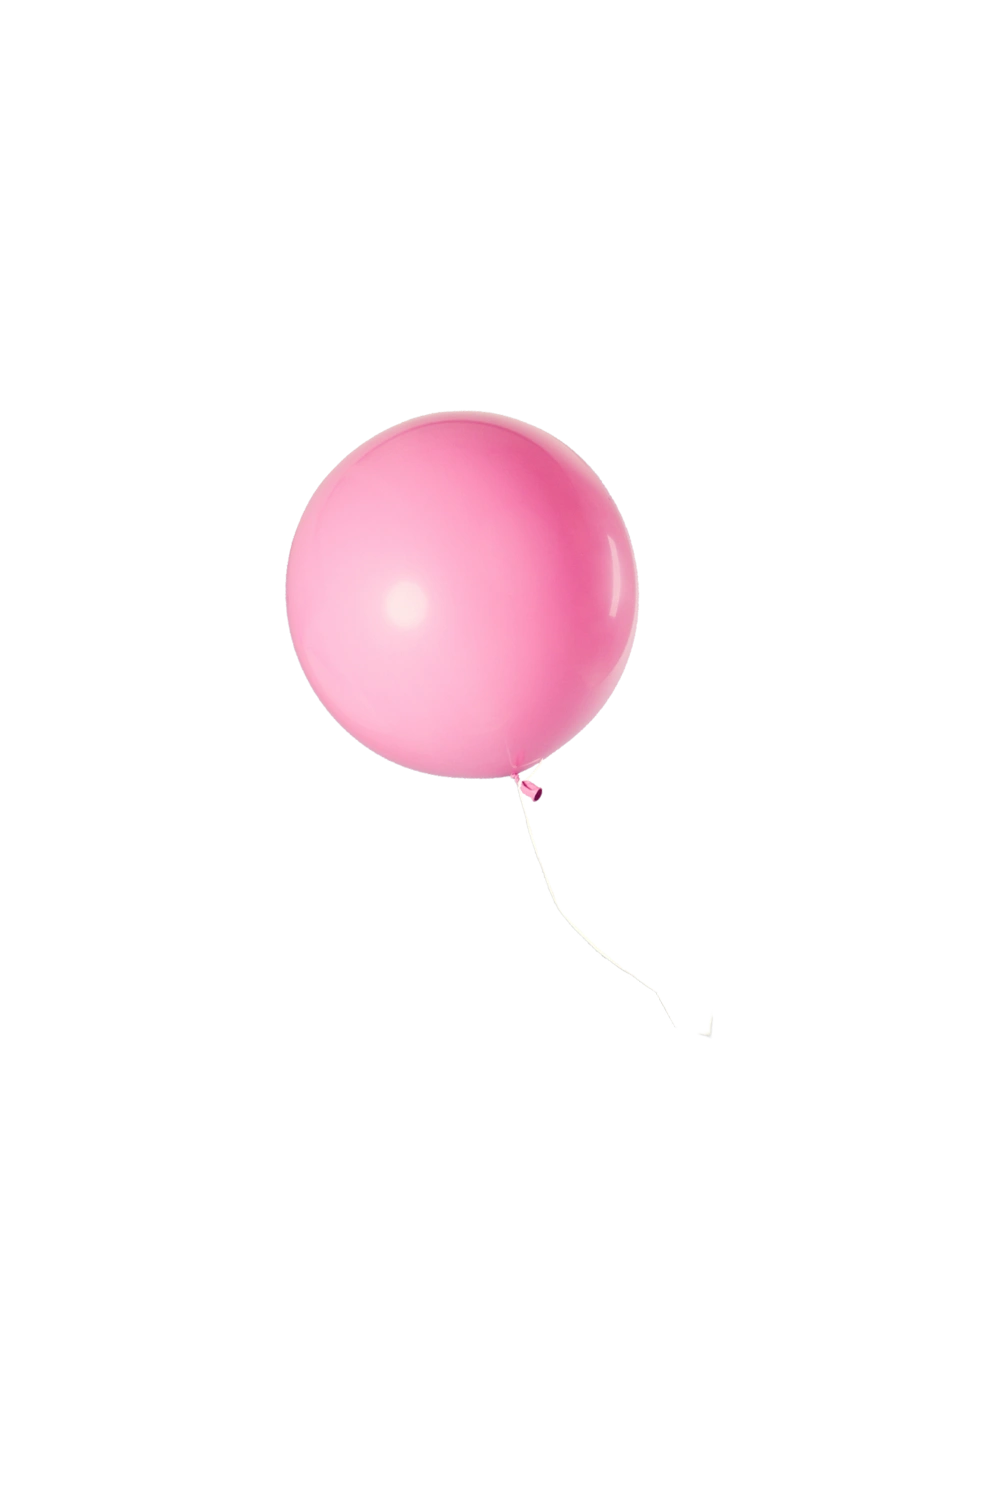 #balloon #balloons #balloon#freetoedit #balloonpink